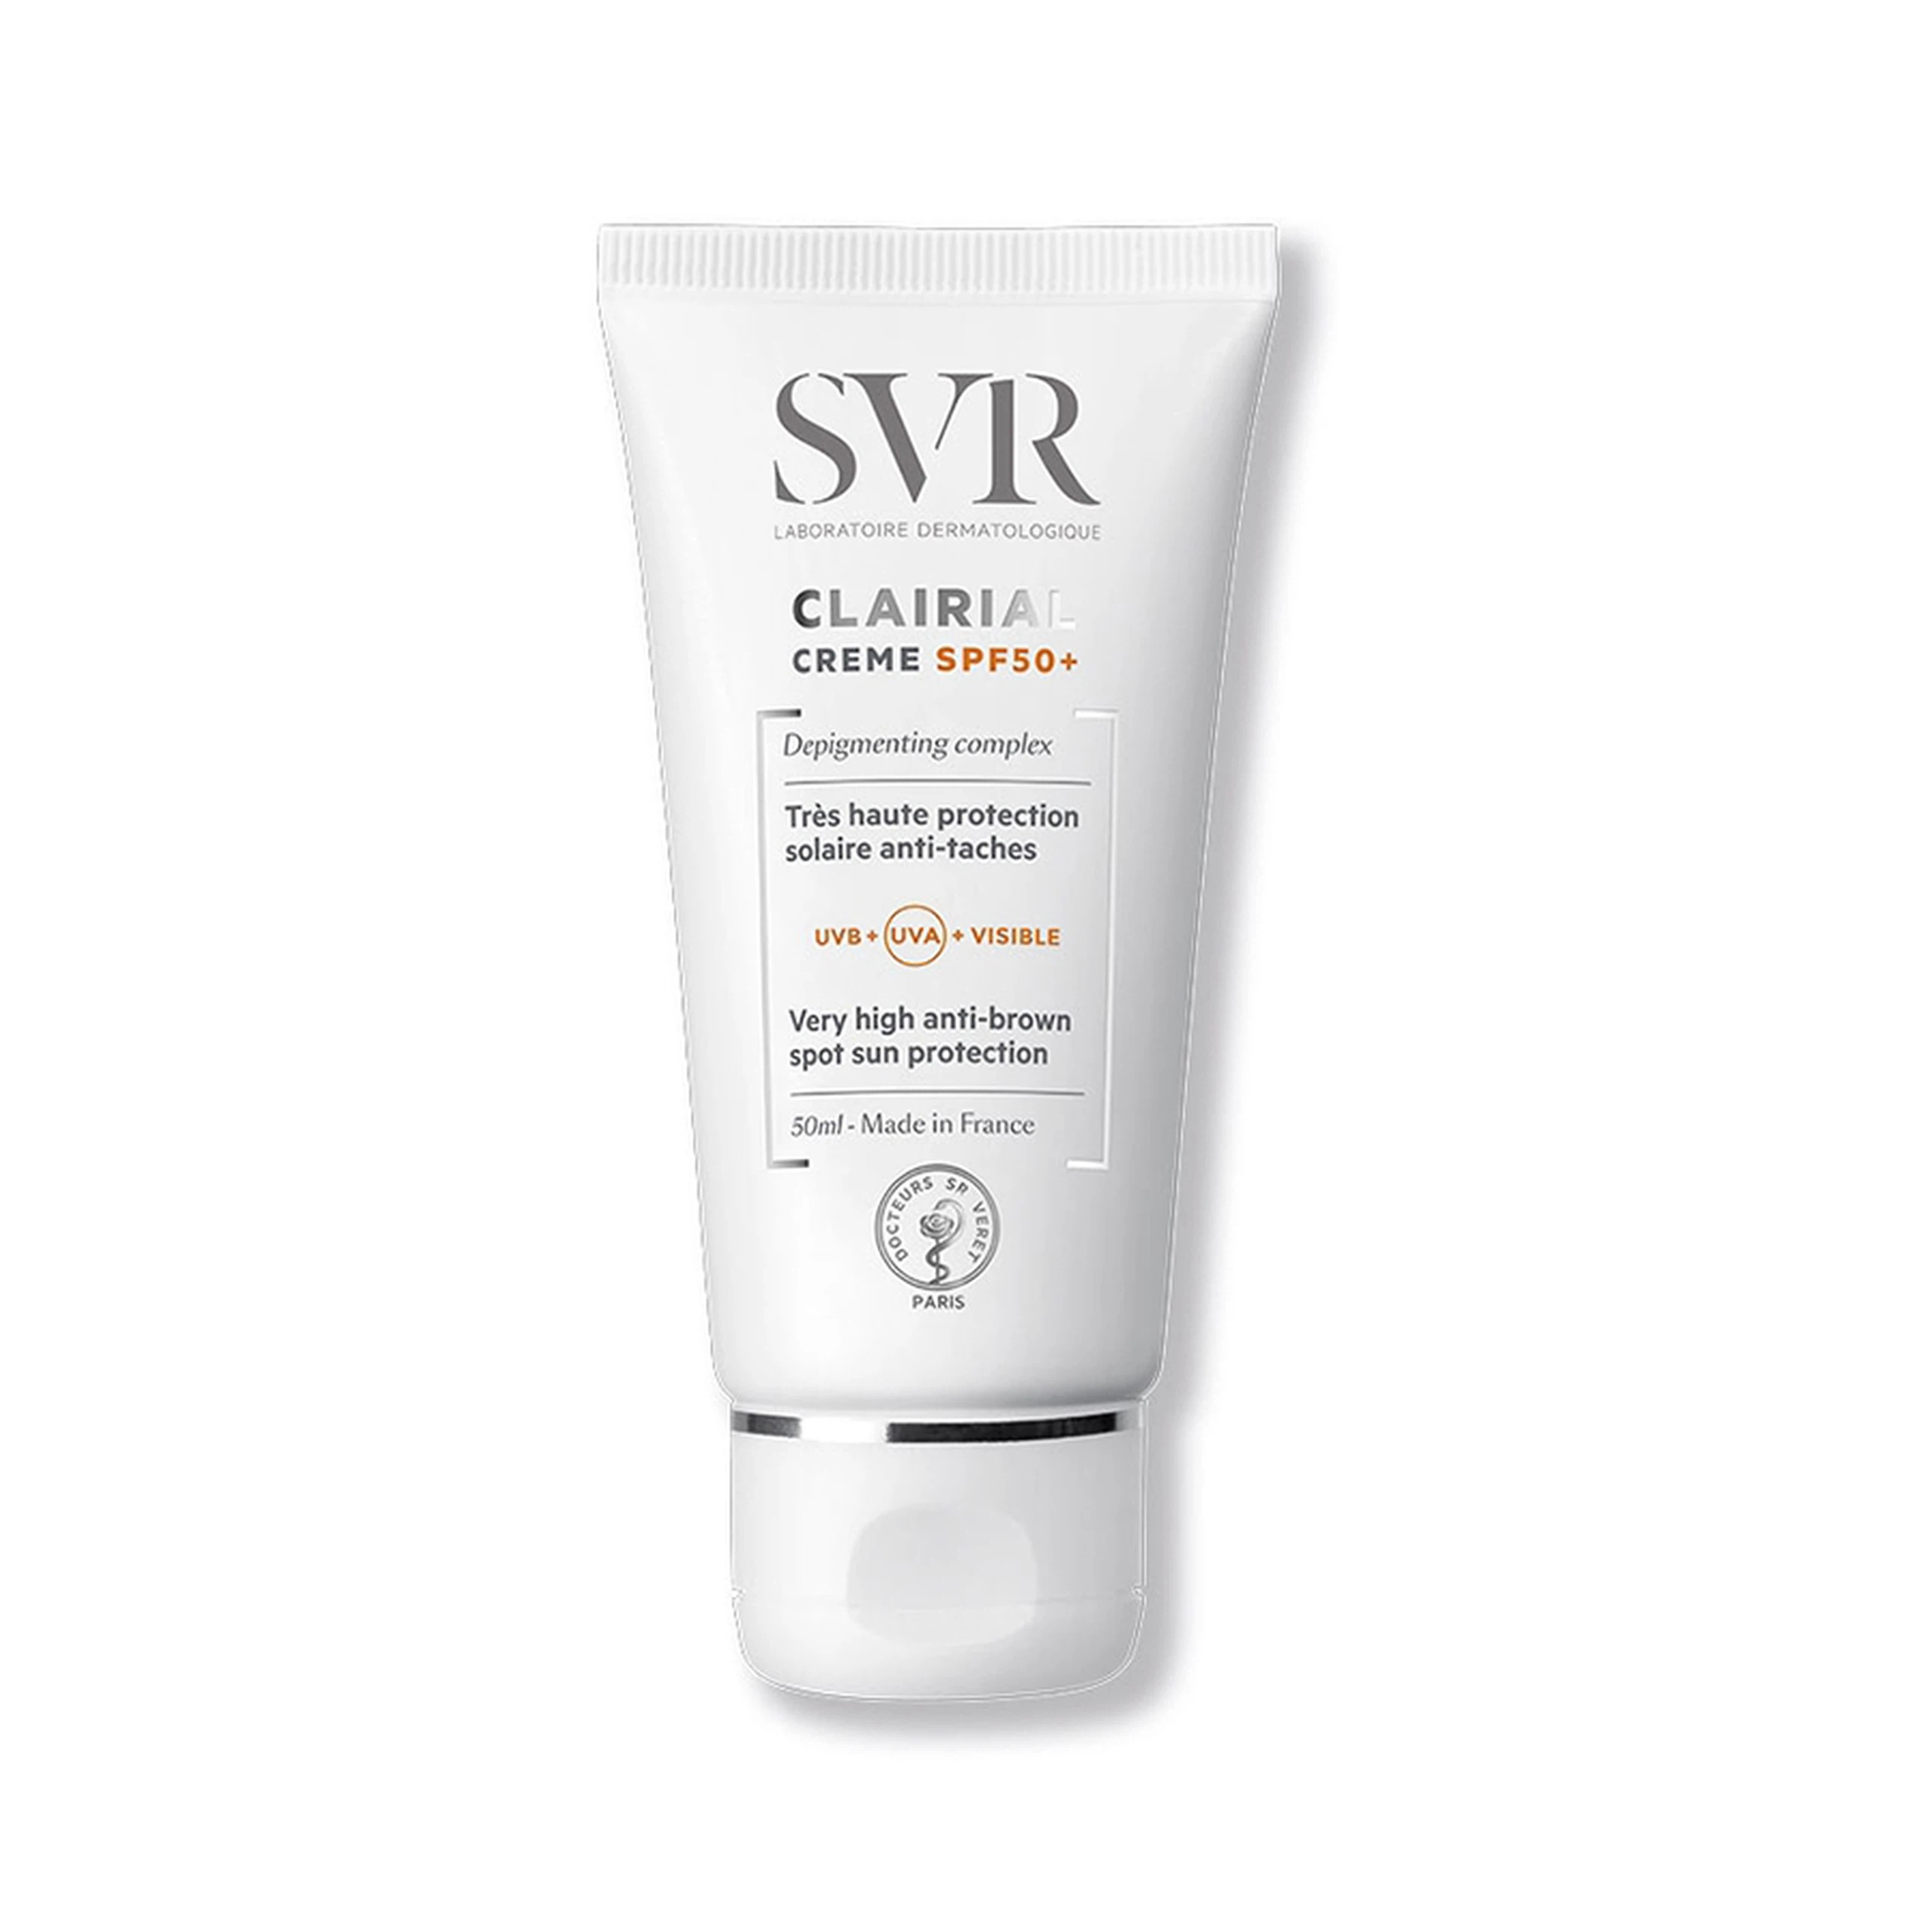 Kem SVR Clairial Creme SPF 50+ chống nắng, làm mờ và giảm kích thước các đốm sắc tố trên da (50ml)